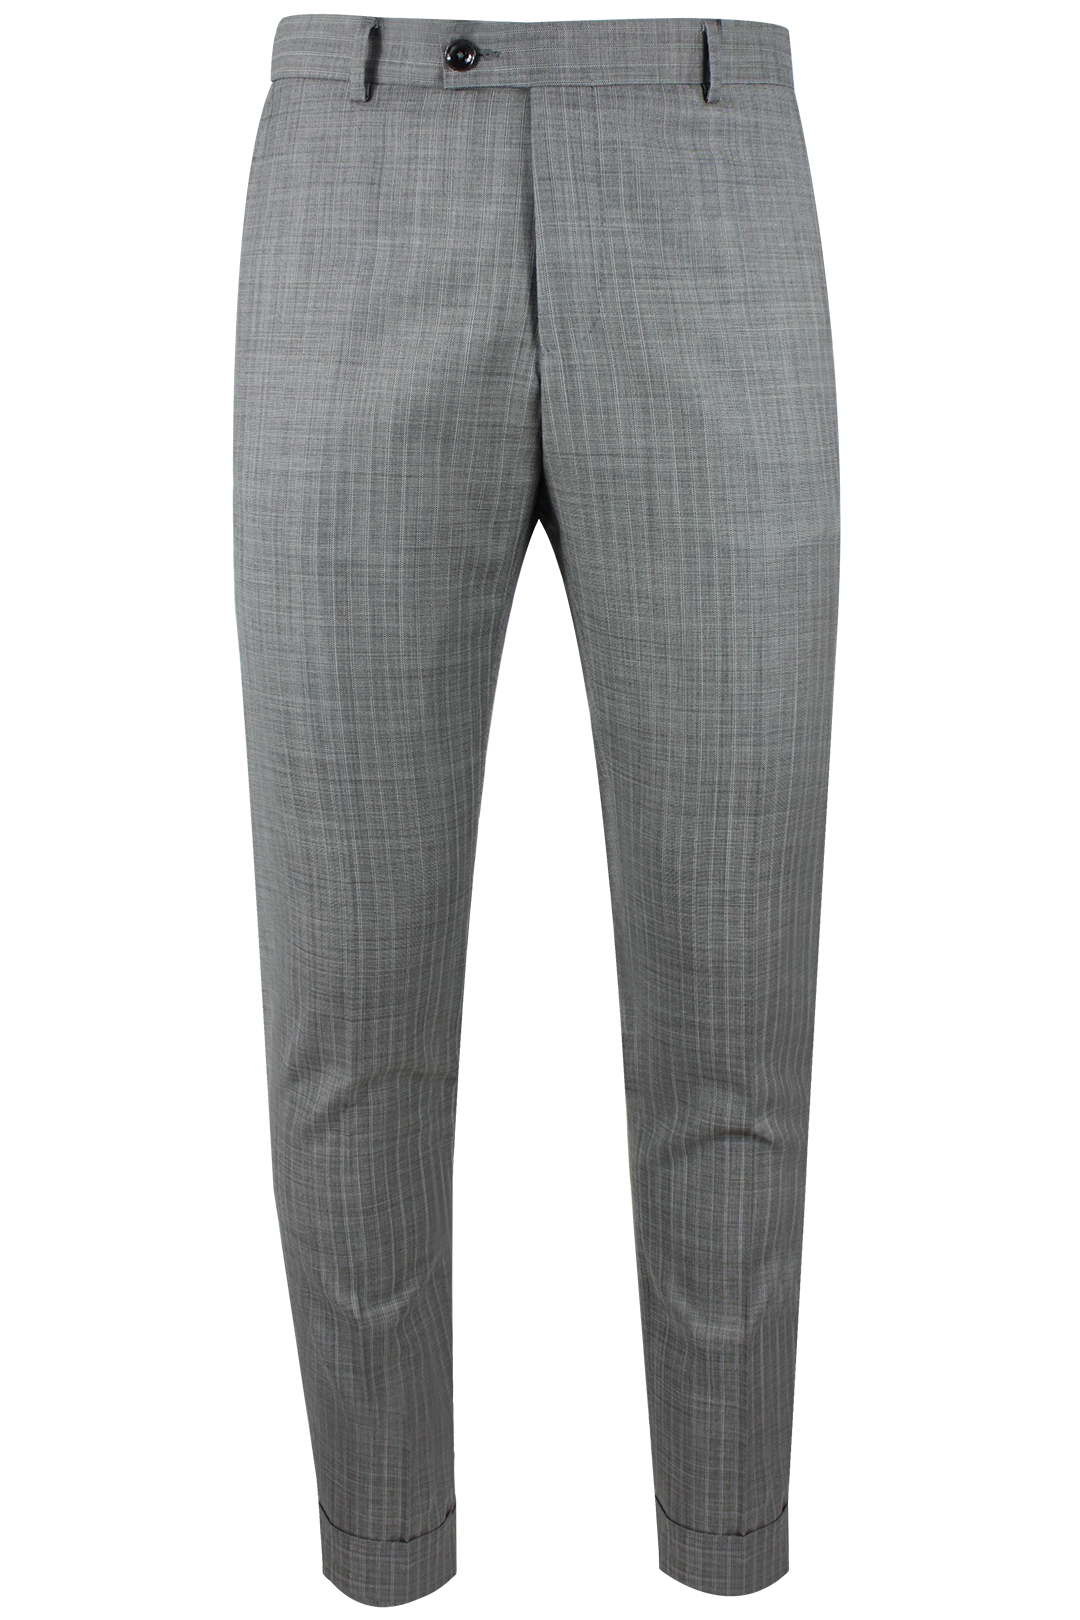 Pantalone risvolto tela di lana grigio gessato